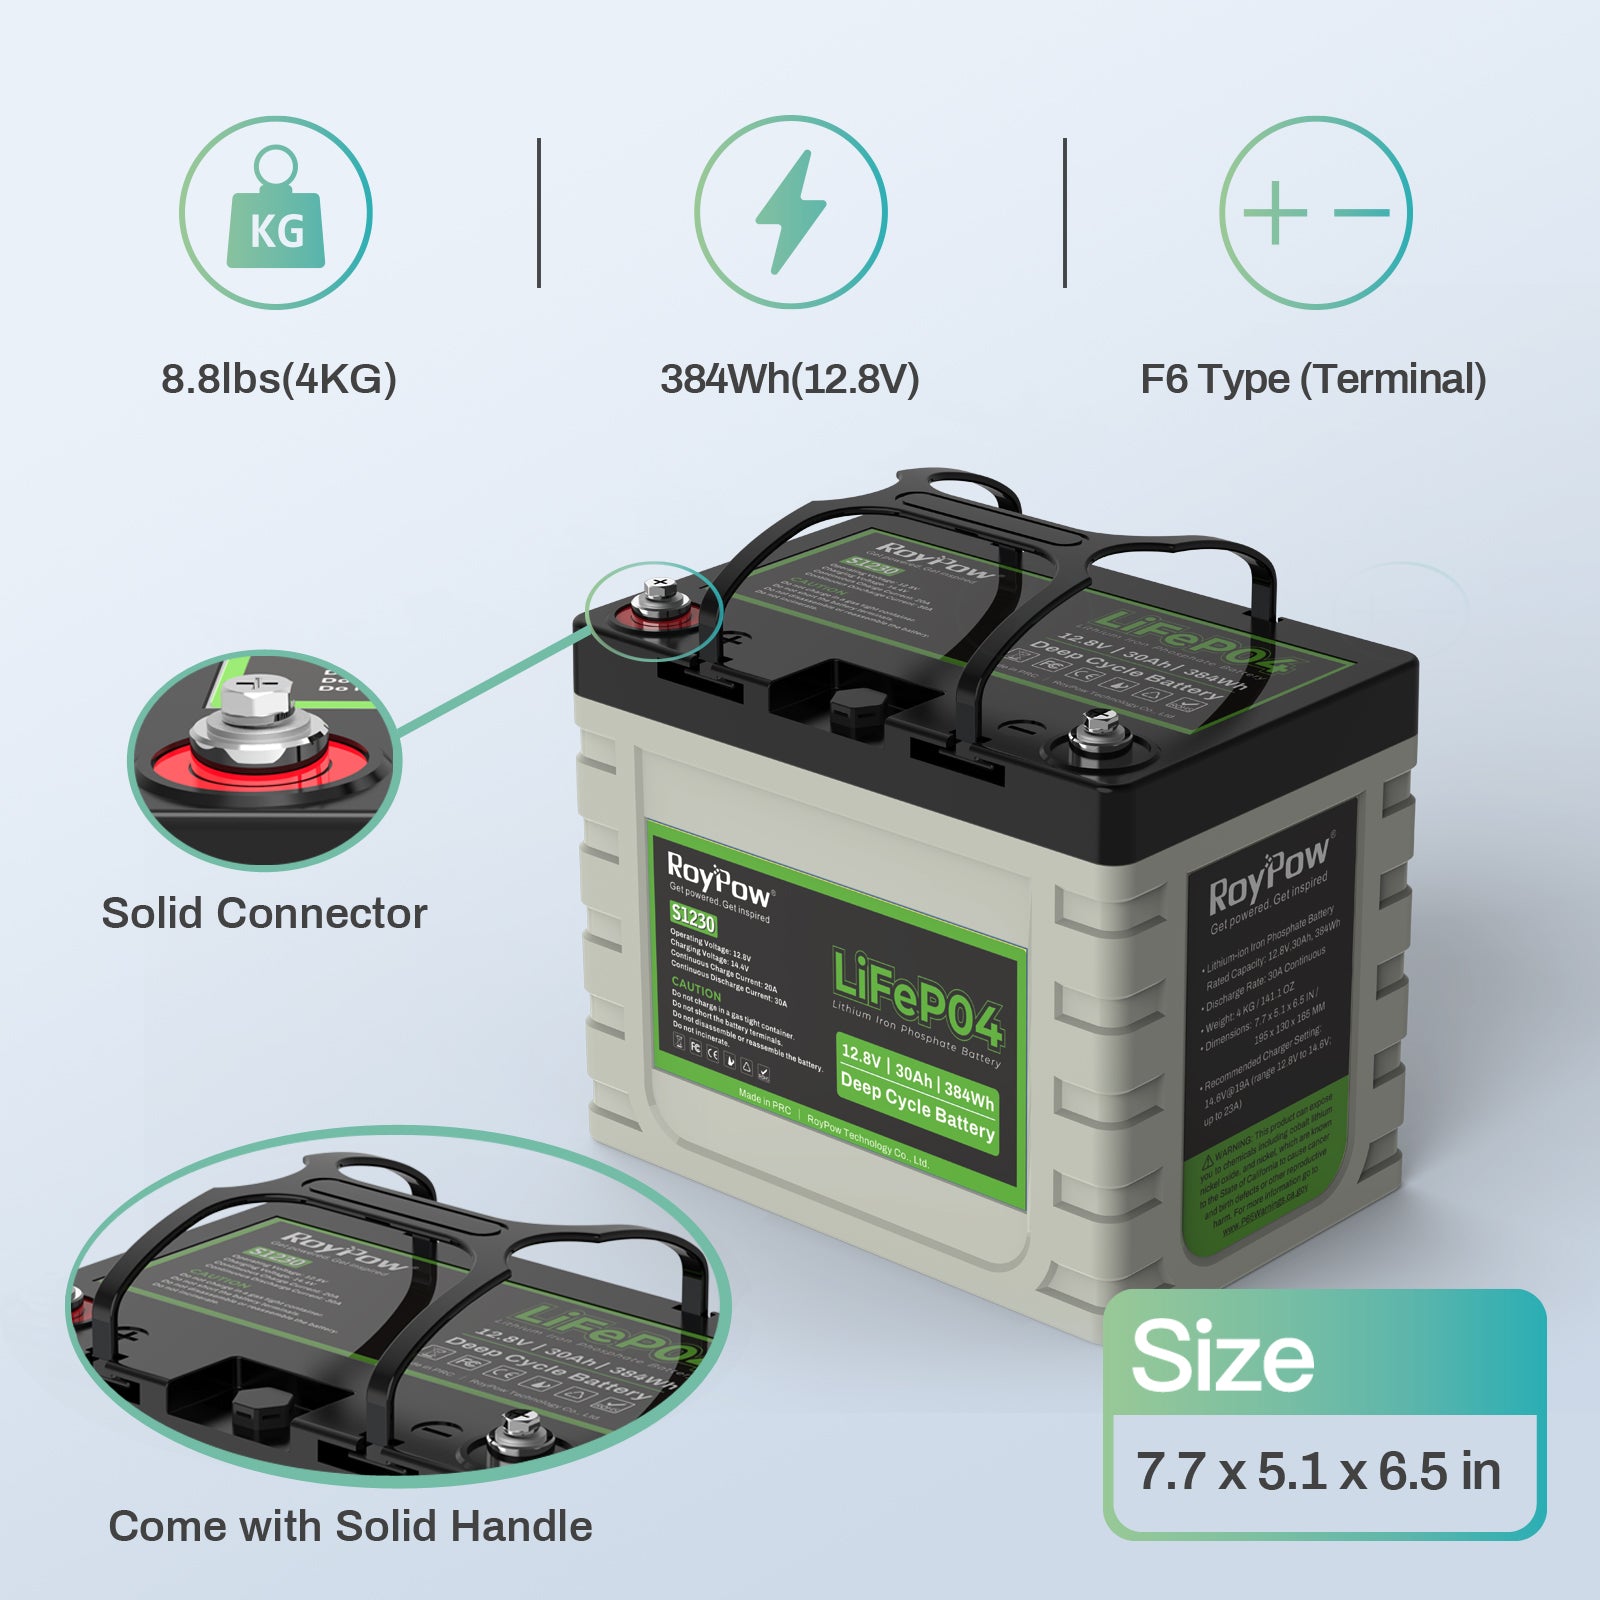 lifepo4 12v, 12v lifepo4 battery